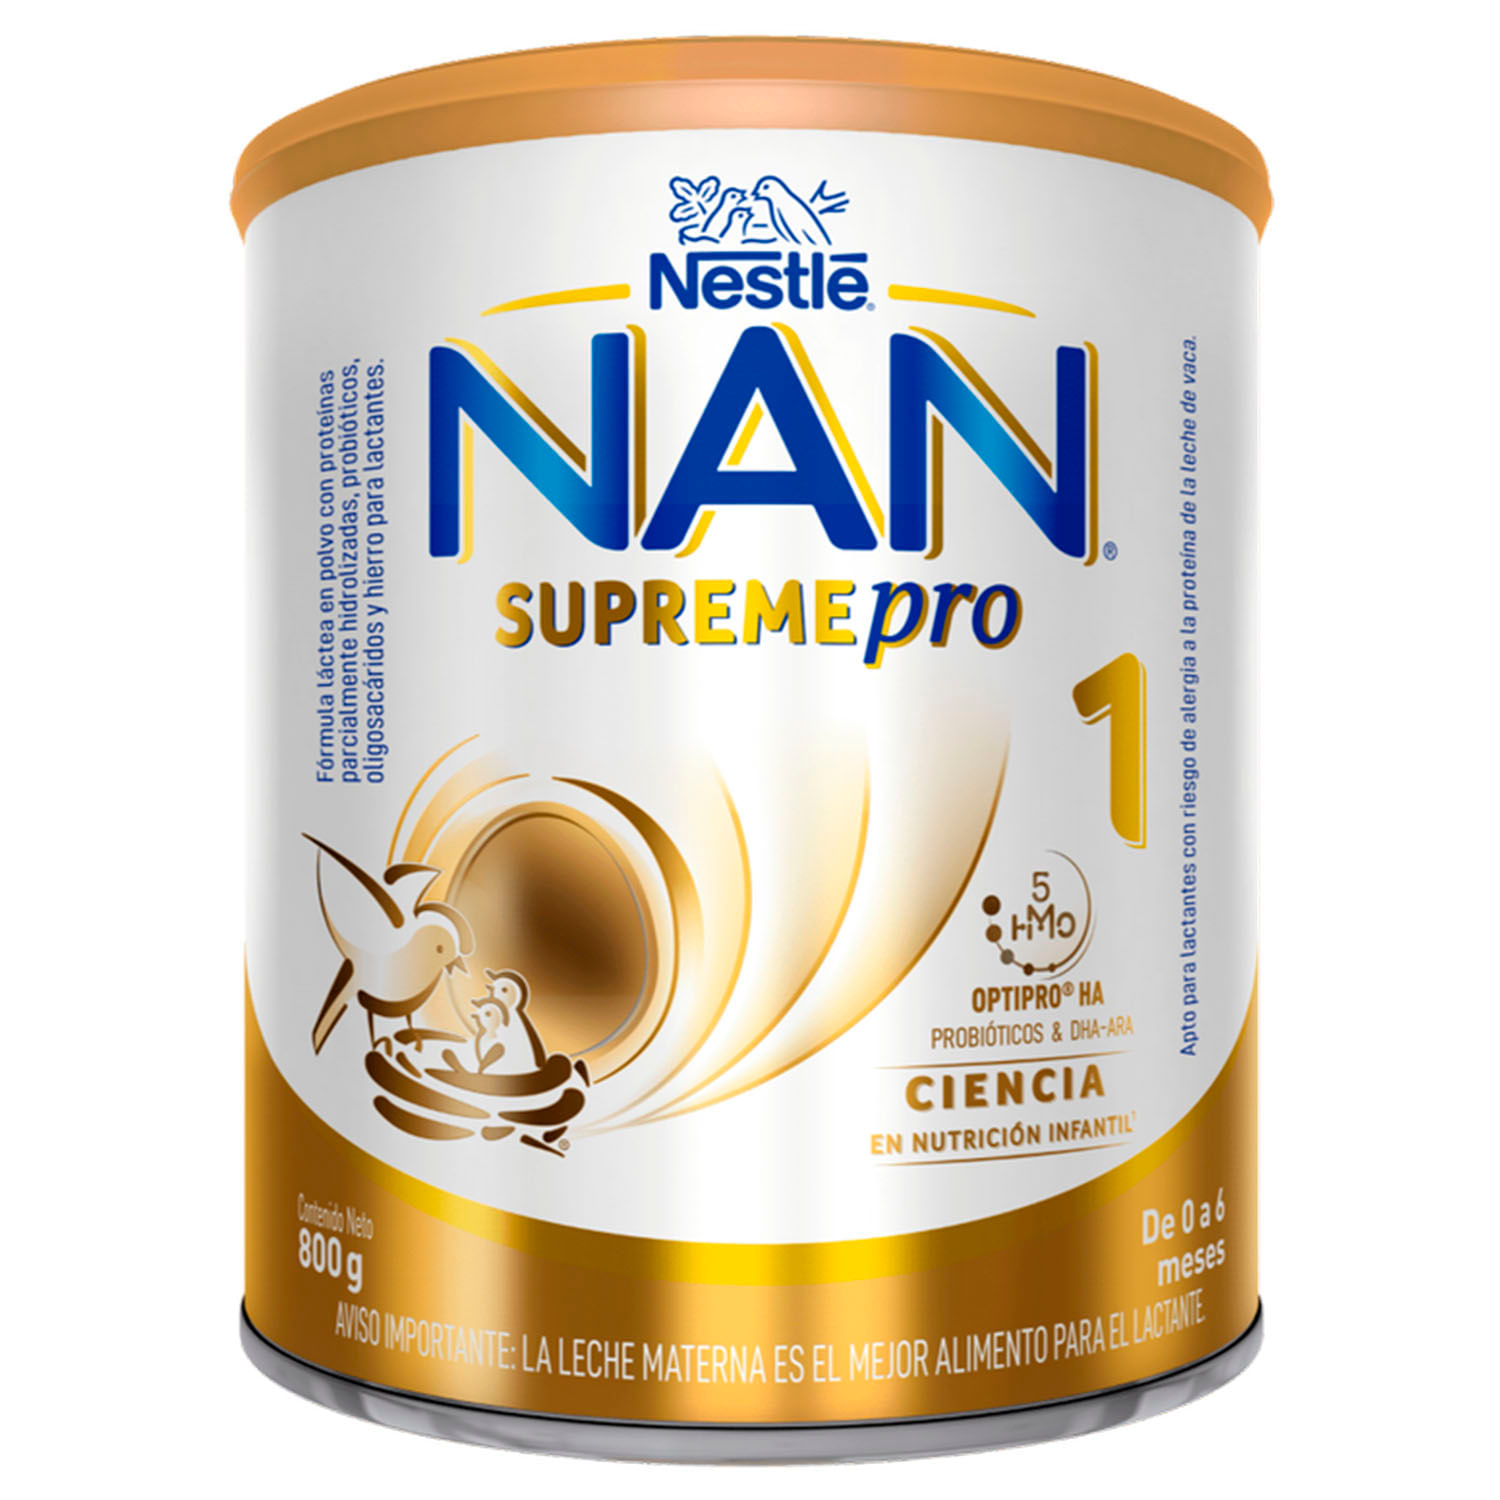 Fórmula Infantil NAN®OPTIPRO® 1 900g - Nan